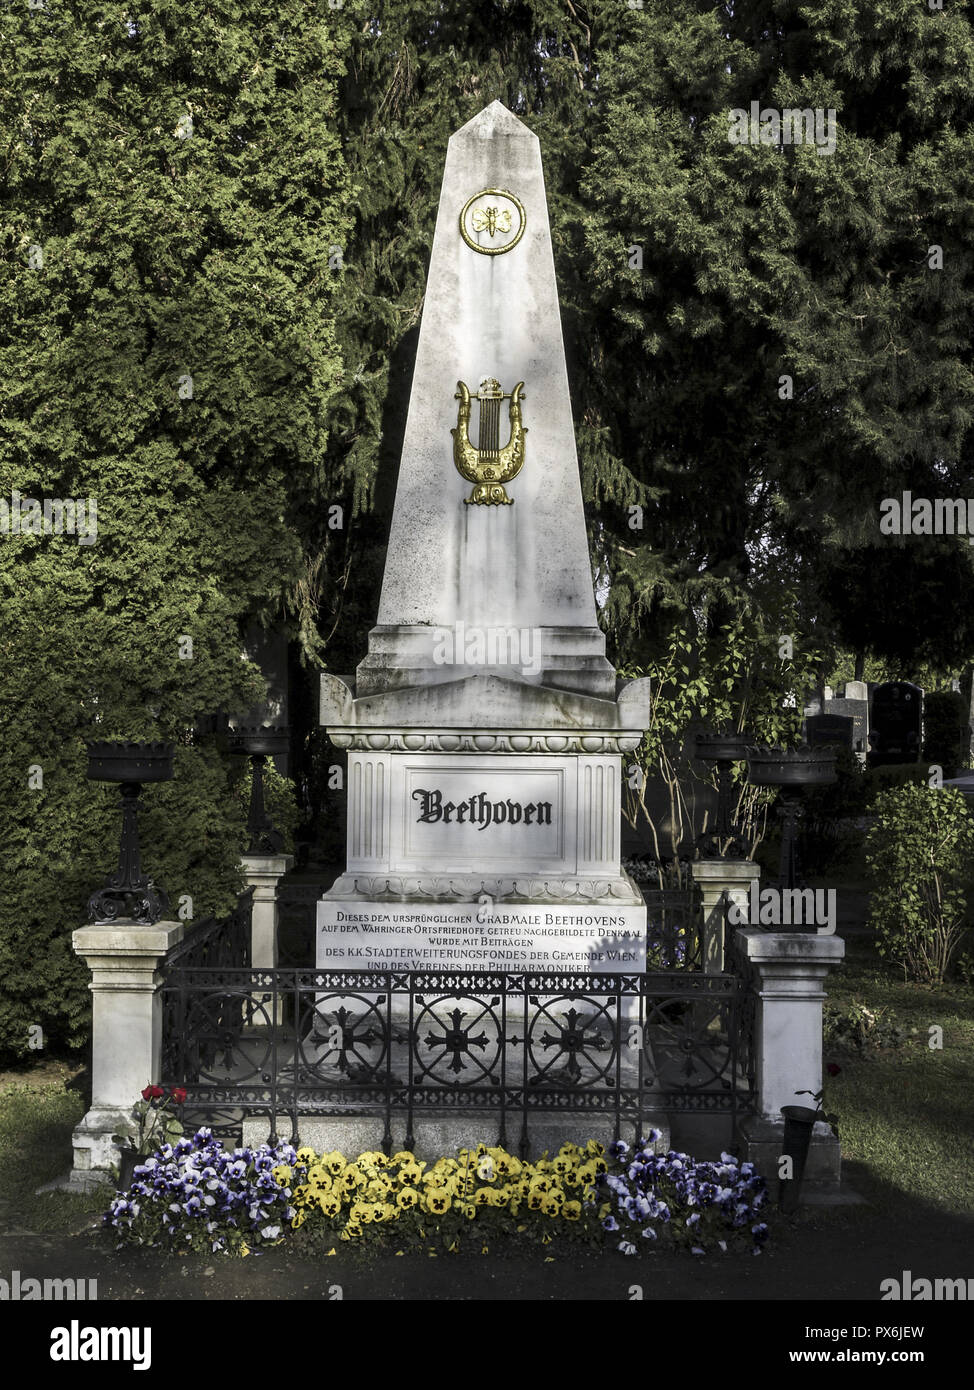 Cimetière central de Vienne, tombe de Ludwig van Beethoven, l'Autriche, 11 district, cimetière central. Banque D'Images